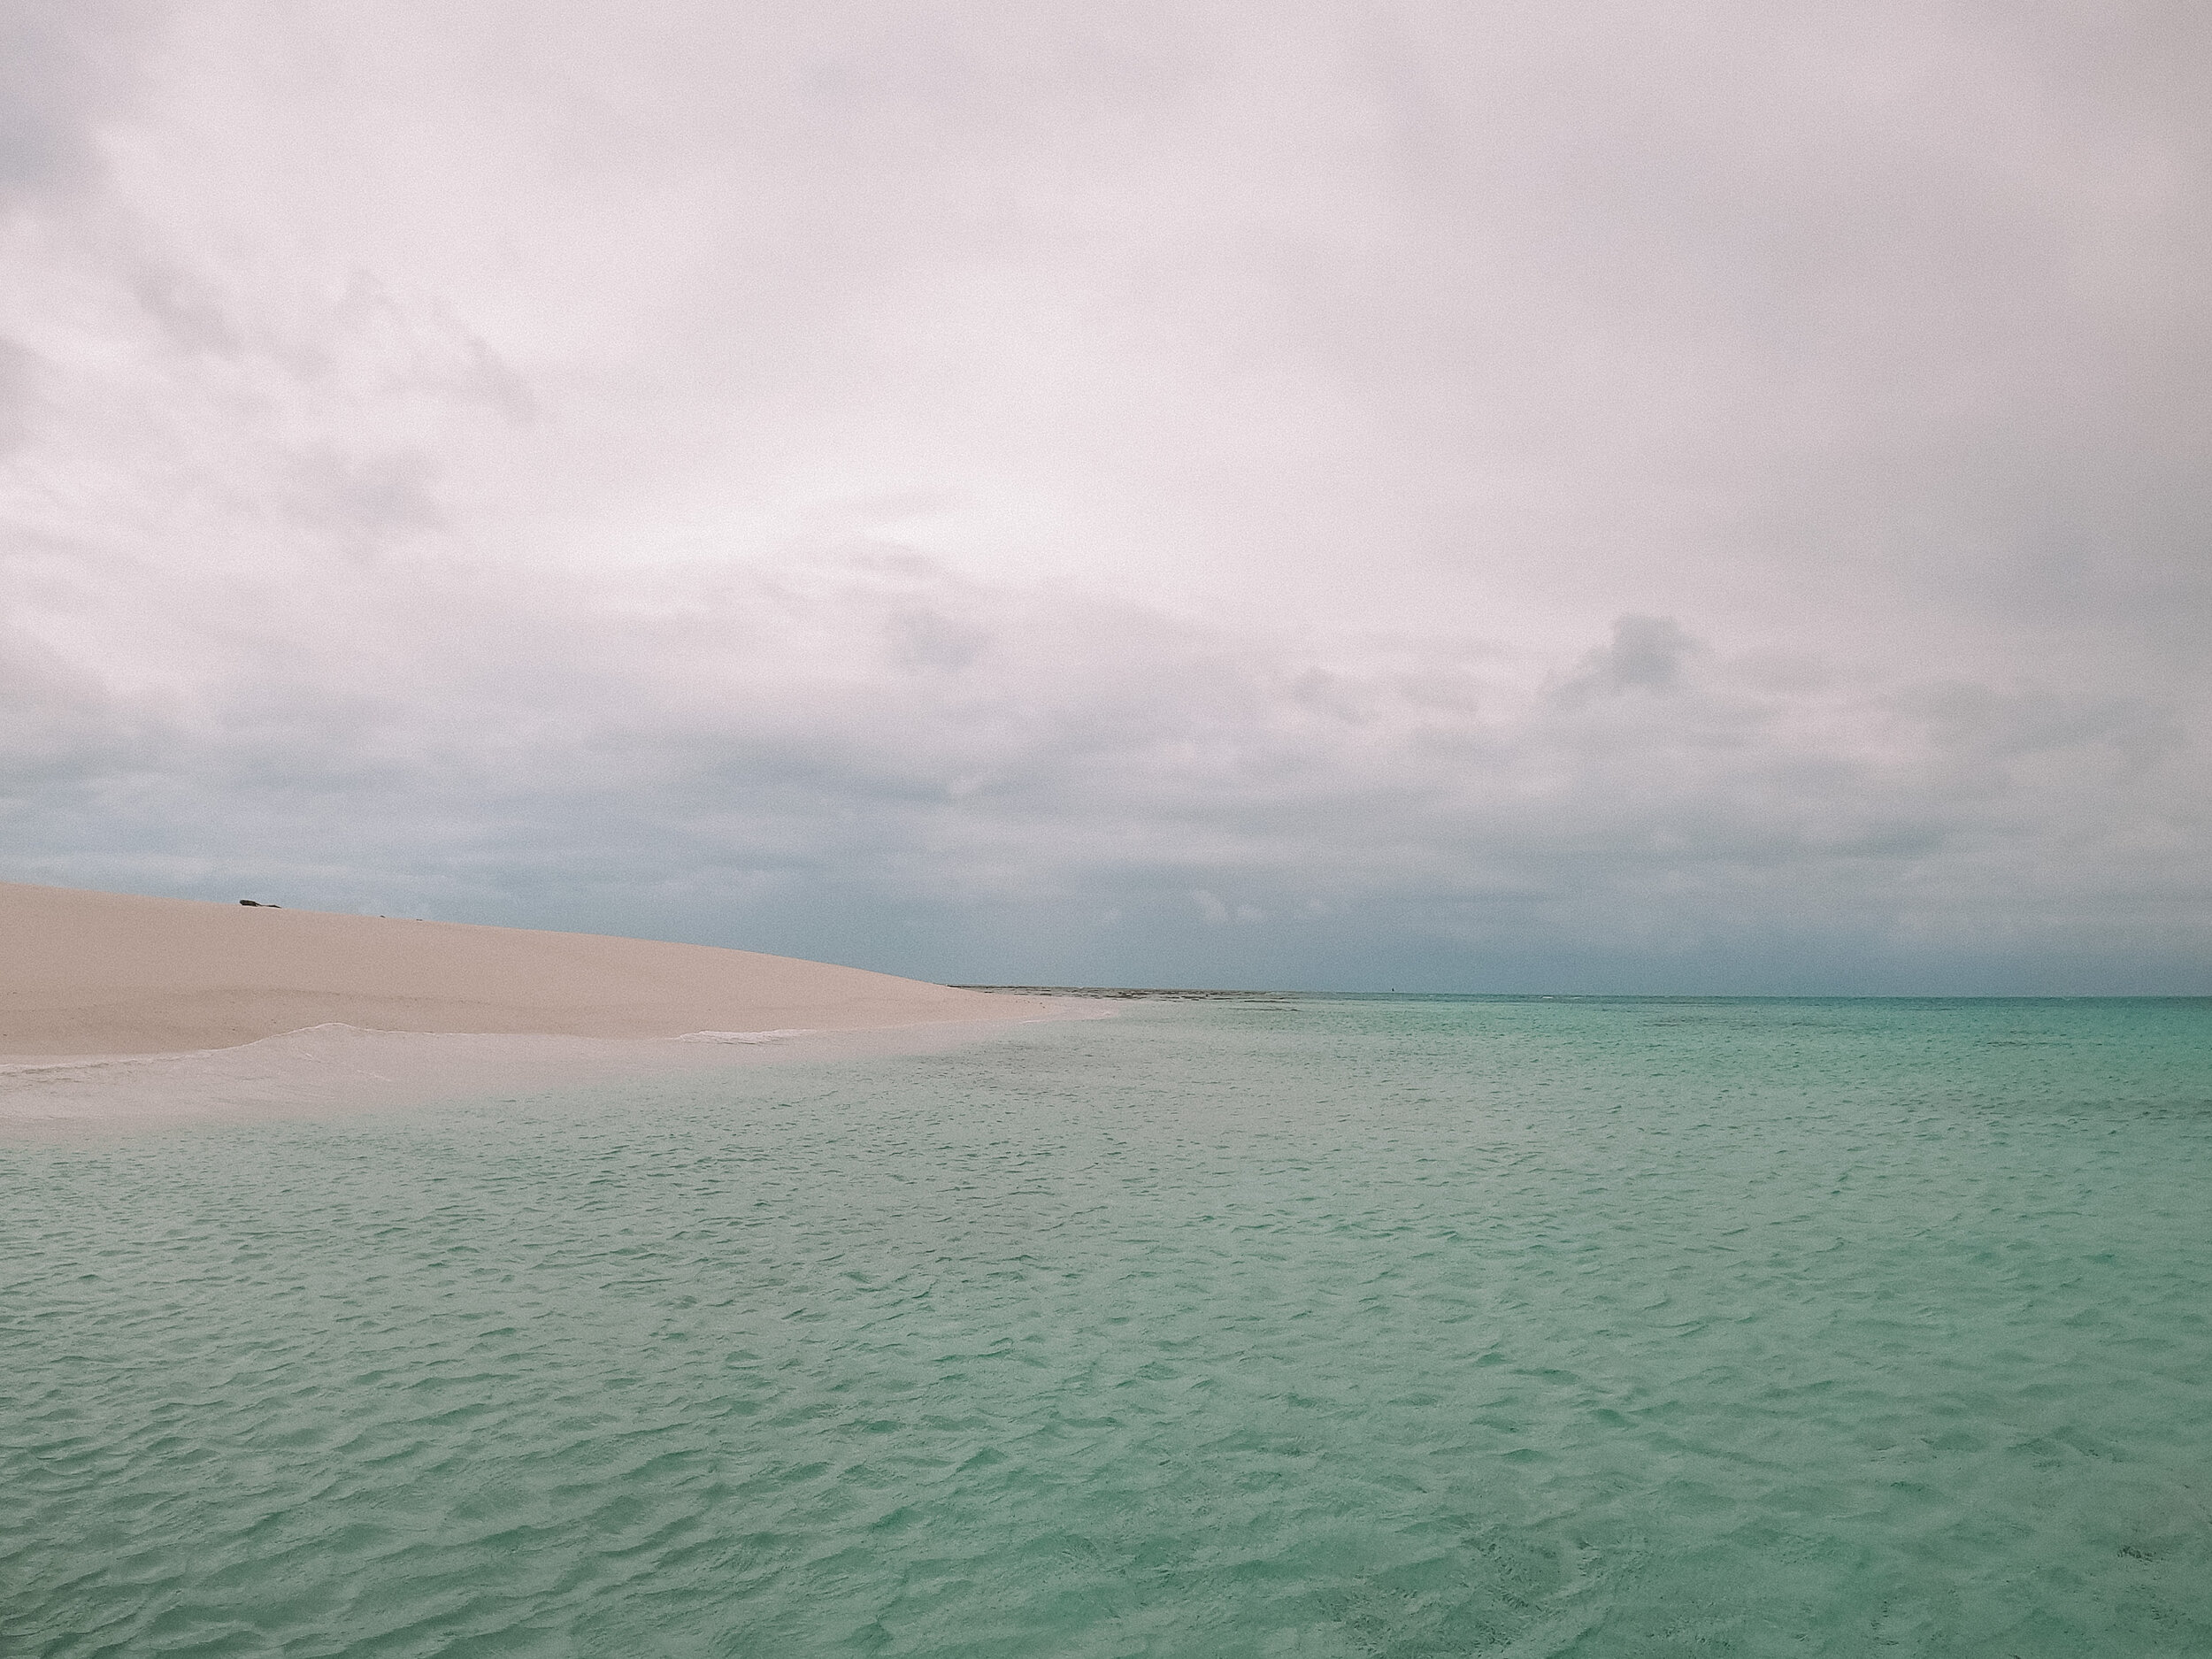 Île déserte sous temps nuageux - Mackay Reef - Cape Tribulation - Tropical North Queensland (QLD) - Australie